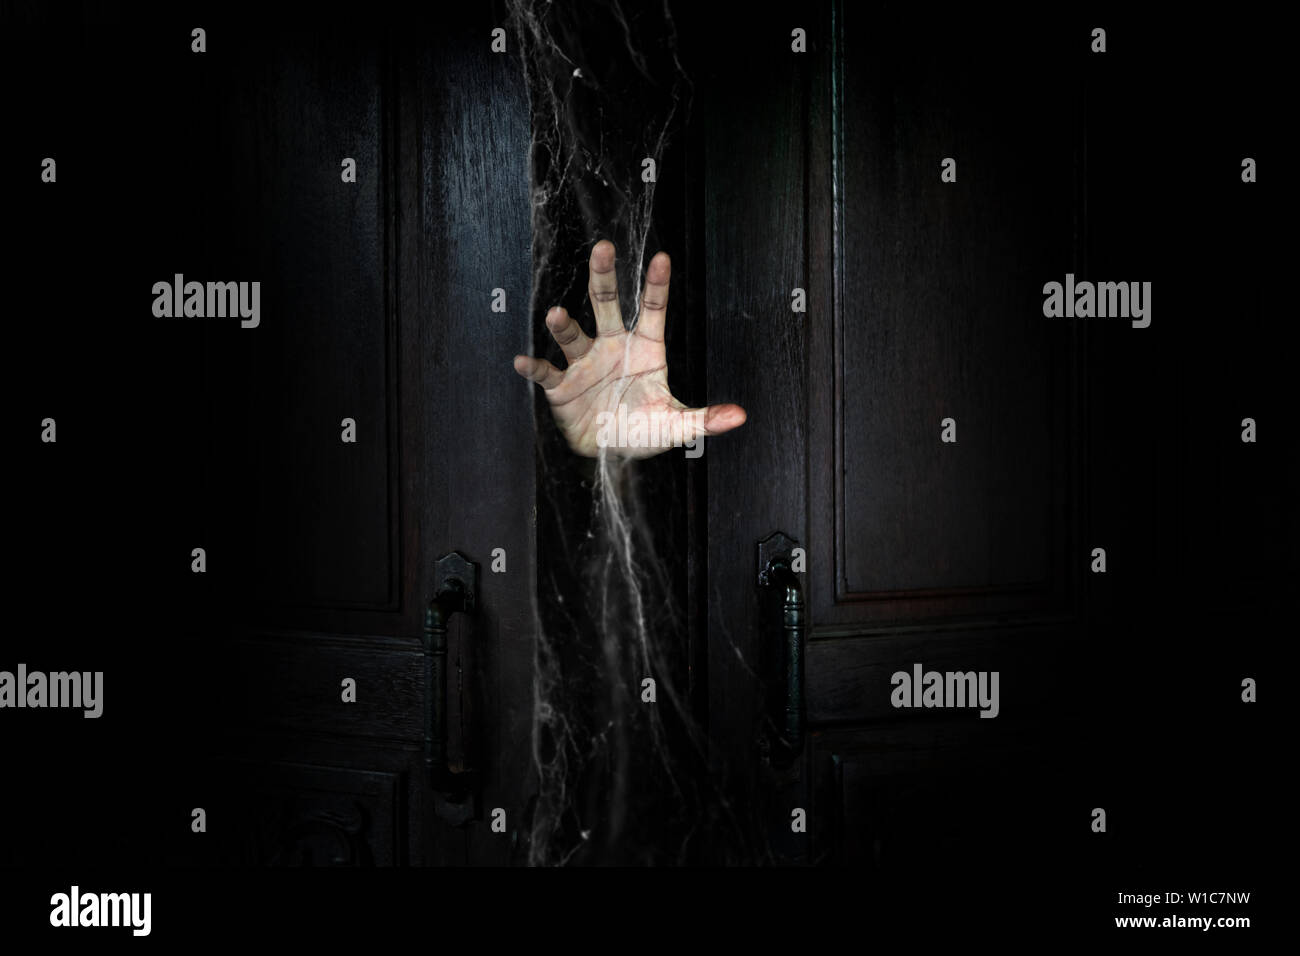 La mano dell'uomo con il bastone dalla porta di legno dall'interno della camera oscura Foto Stock